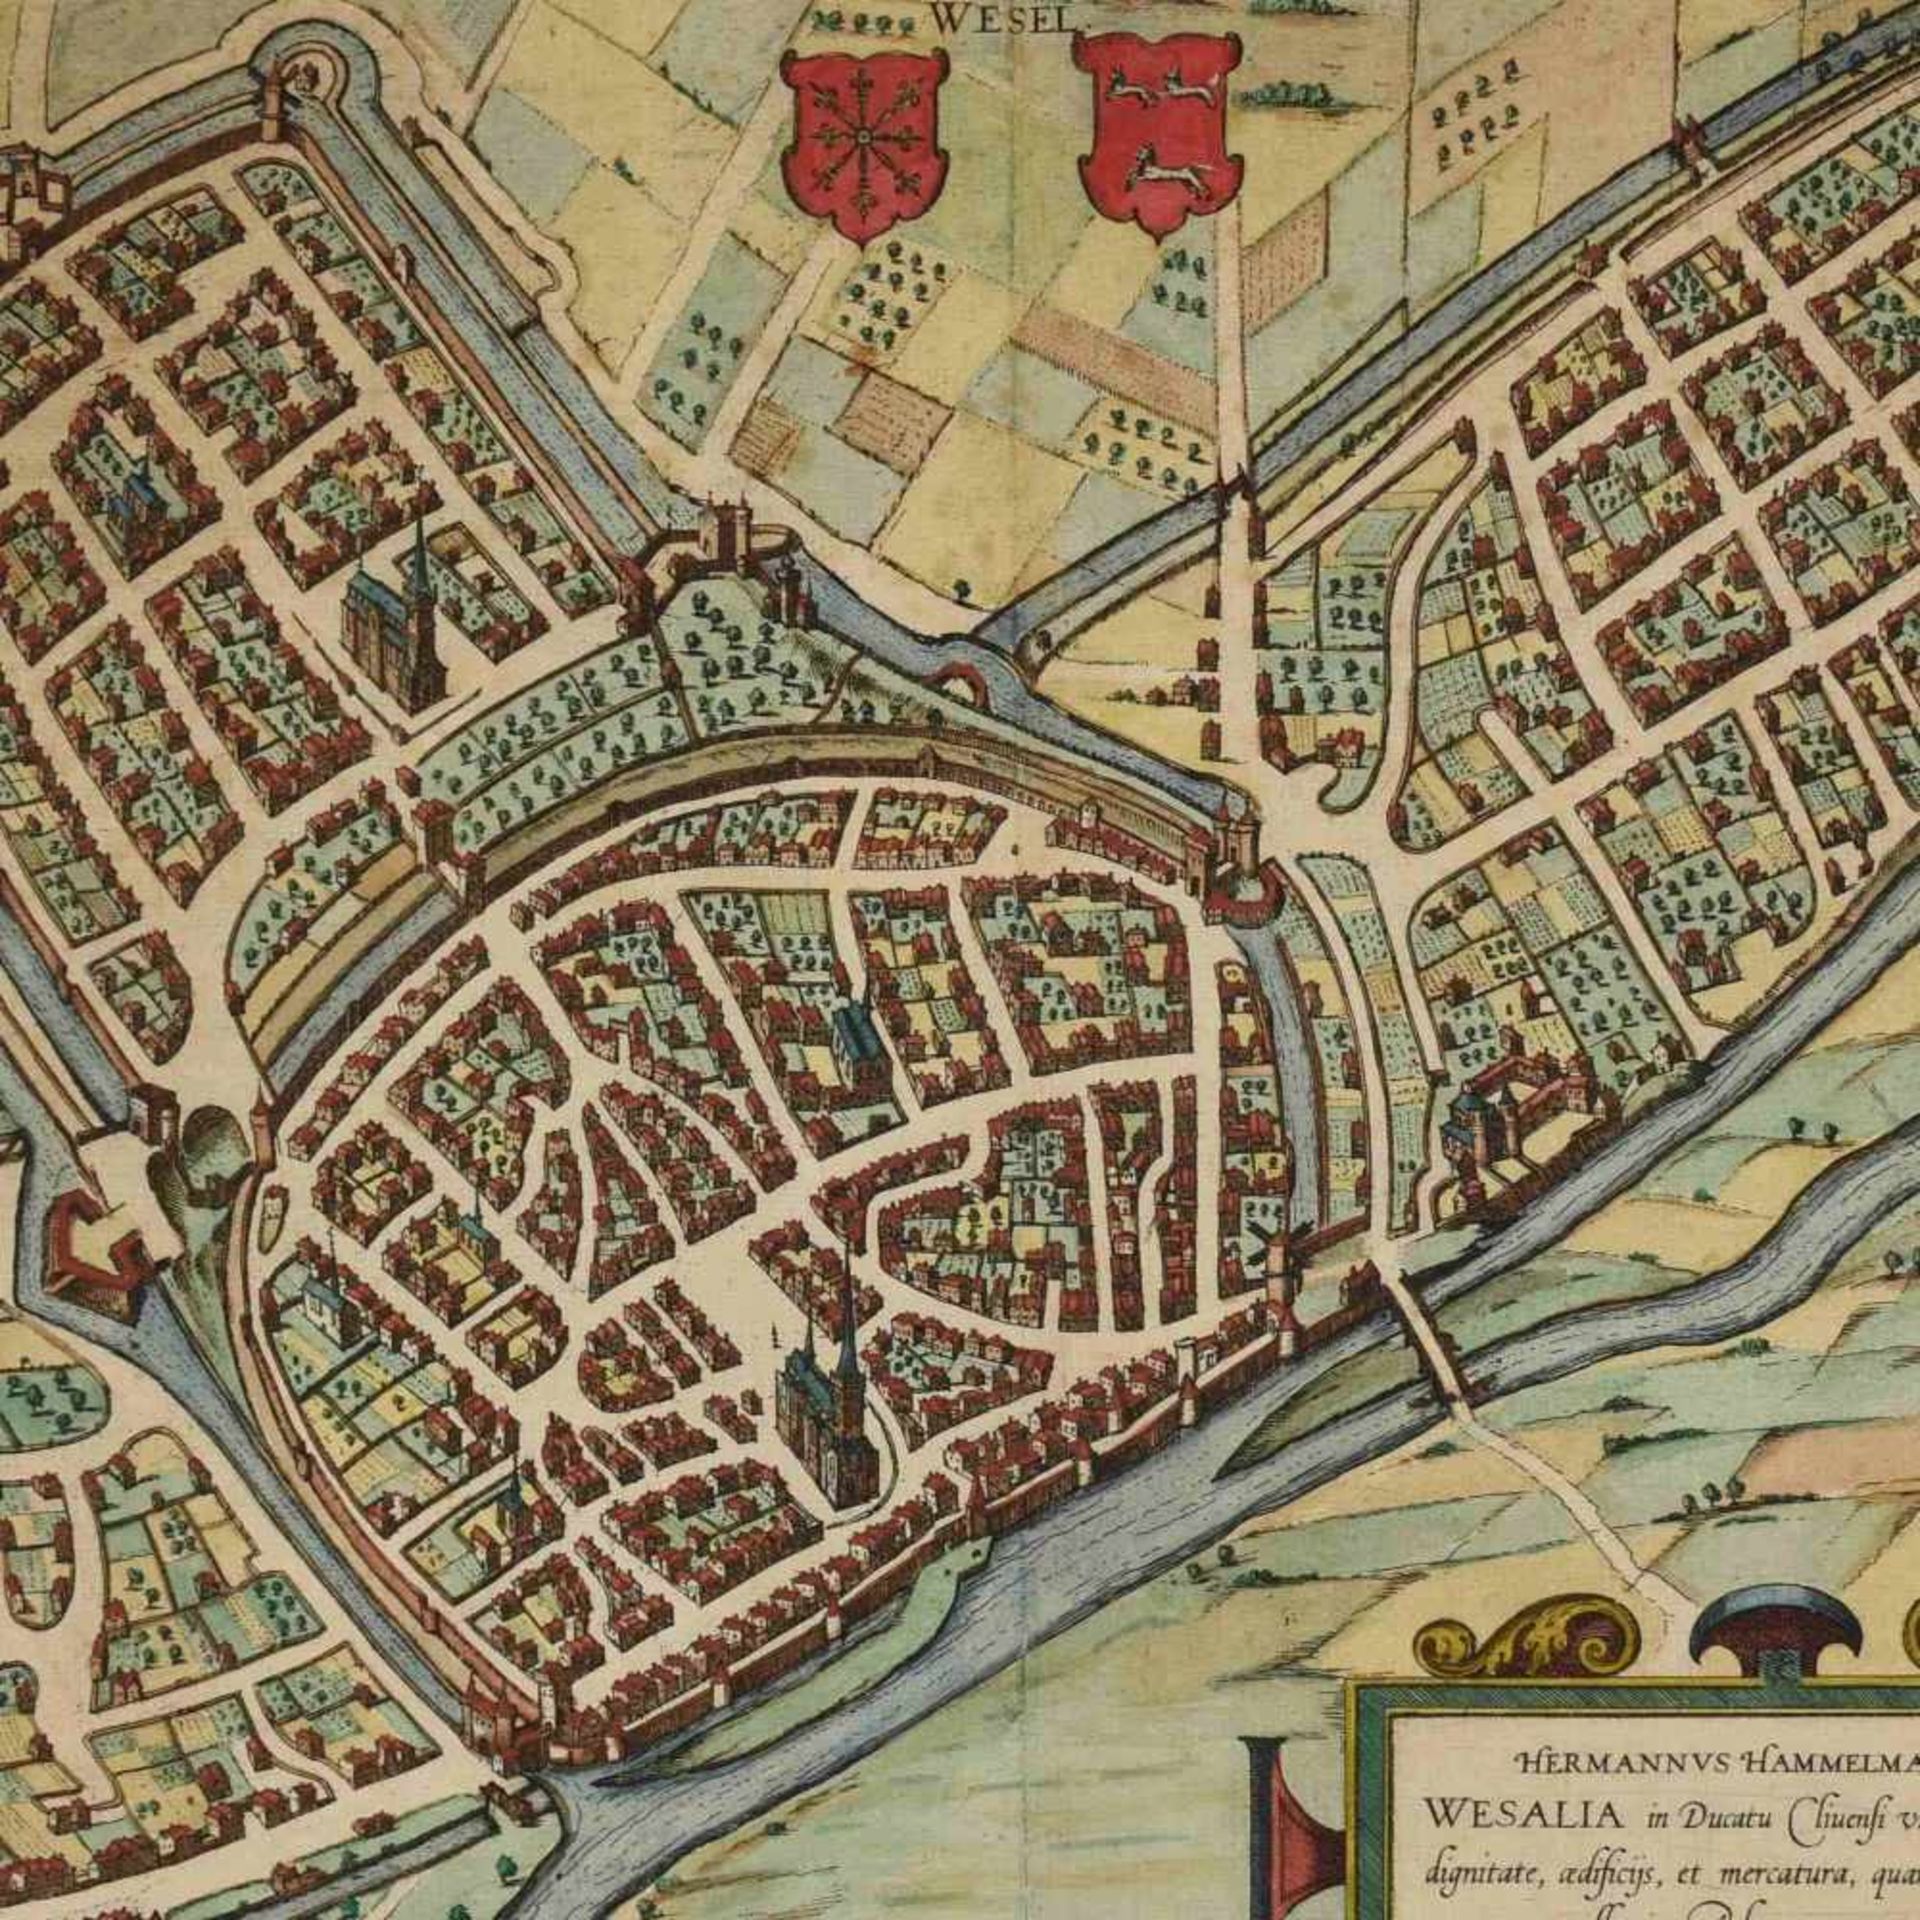 Historische Karte von Wesel Kupferstich, "Wesalia in Ducatu Clivensi urbs clara opibus", verso mit